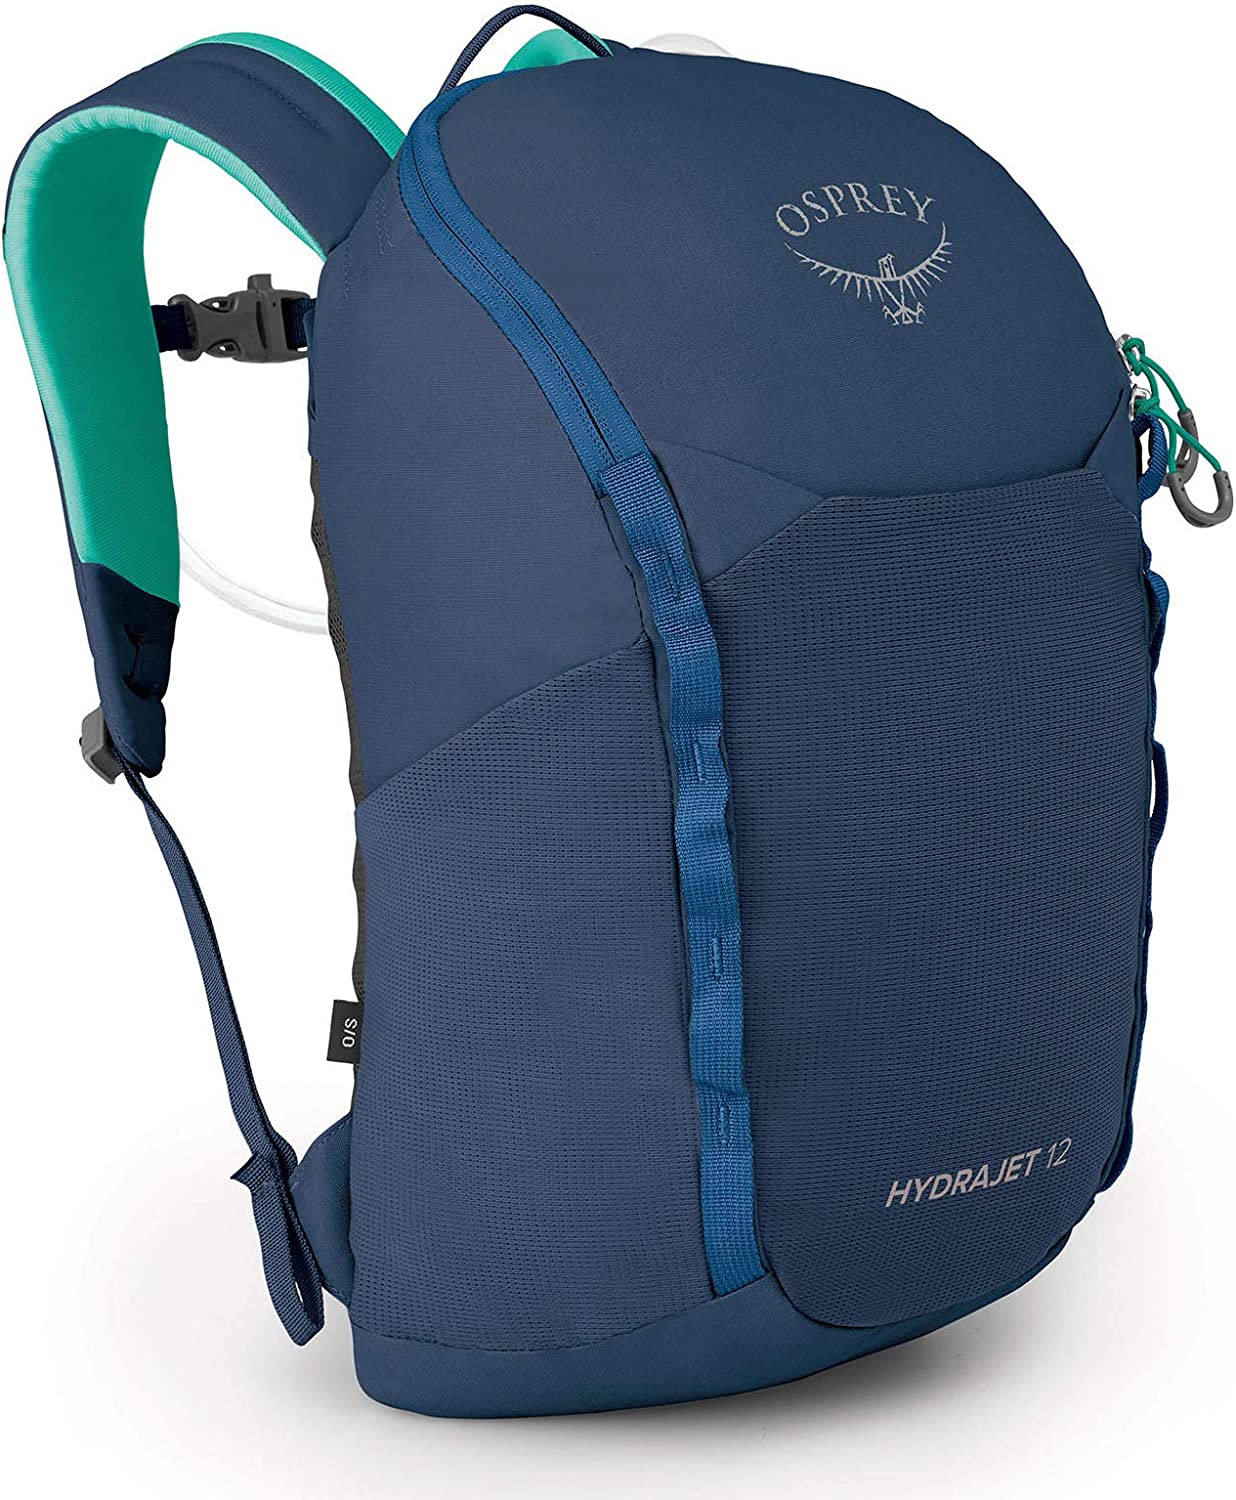 Osprey Kids' Hydrajet 12 Backpack - image 1 of 2